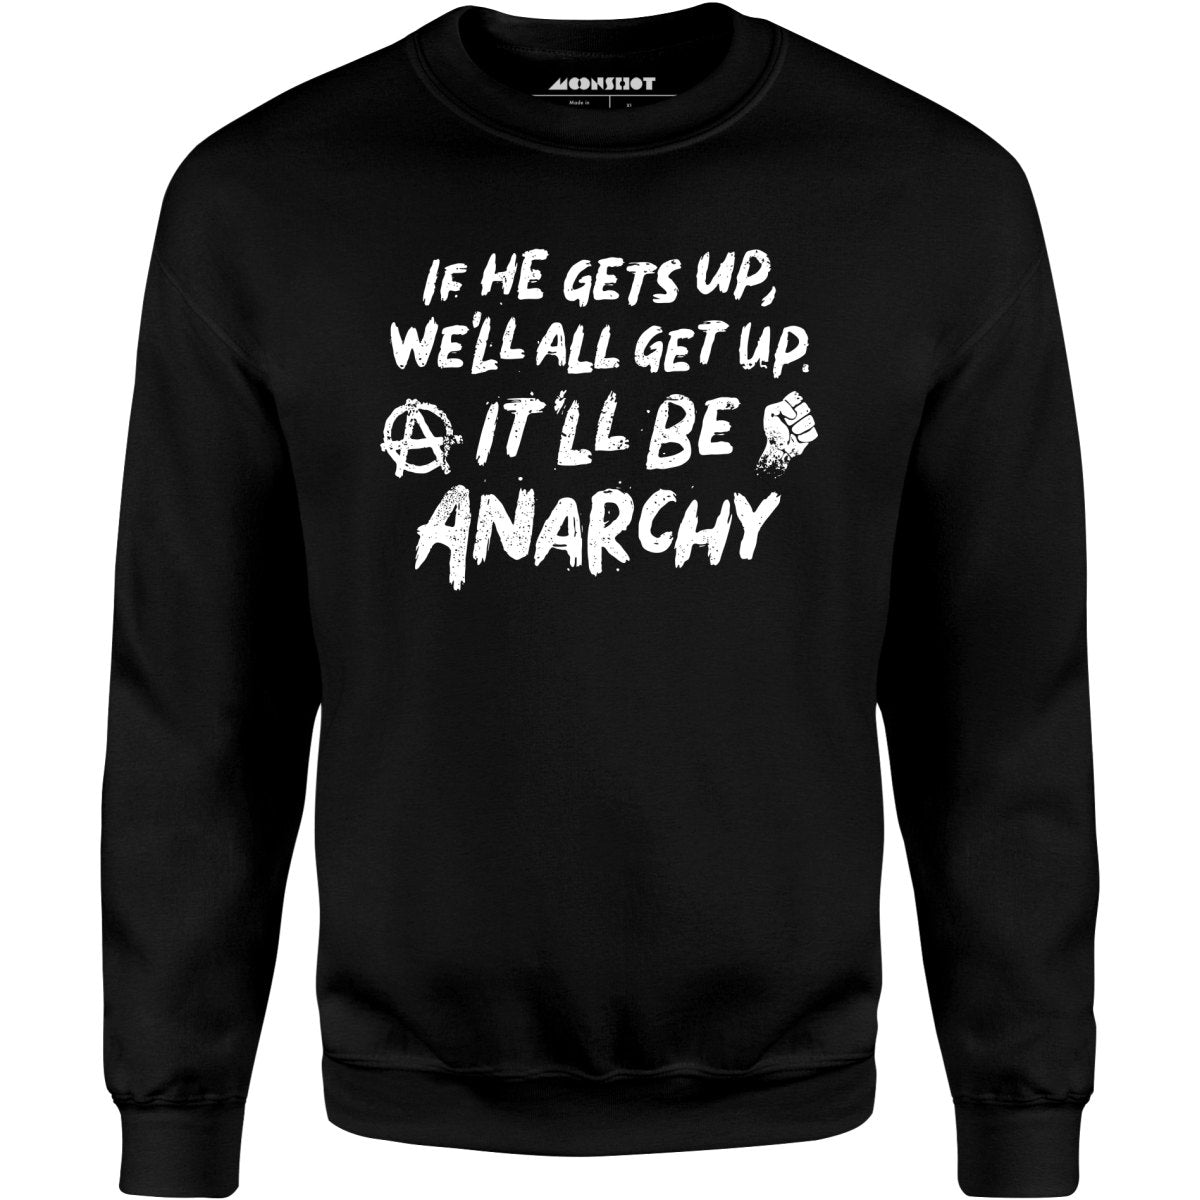 It'll Be Anarchy - Unisex Sweatshirt